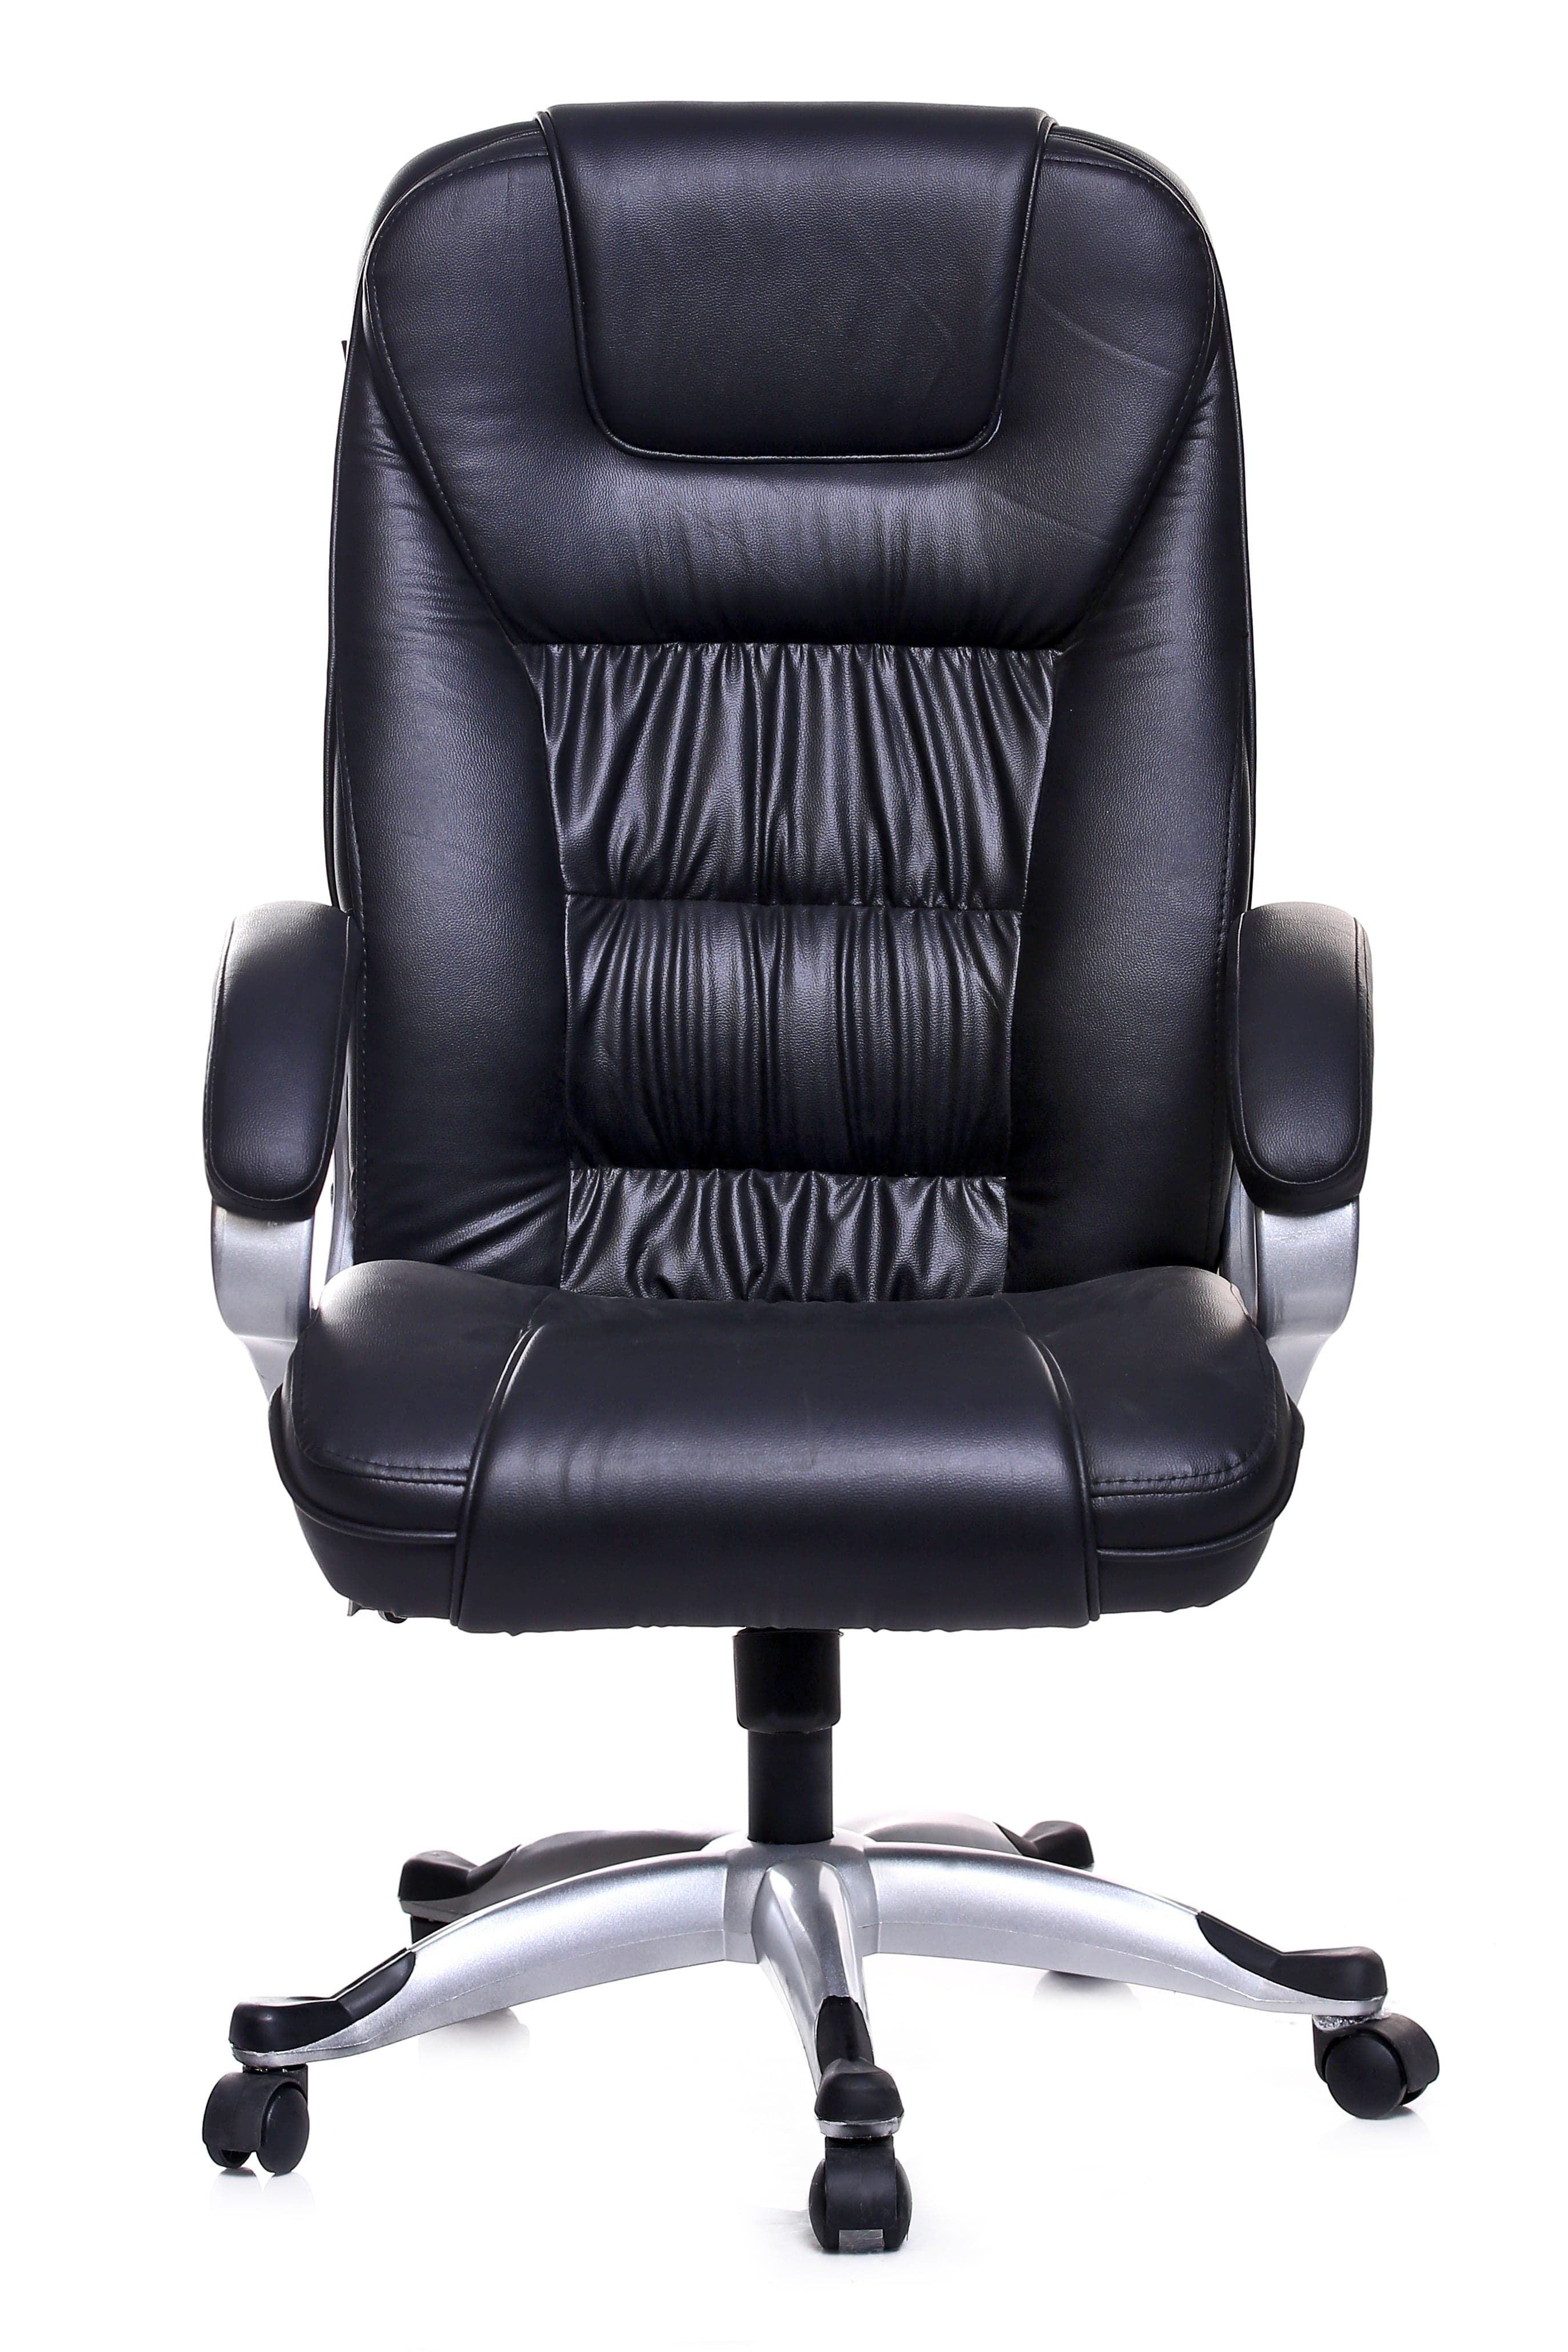 Adiko Executive Chair in Black Colour